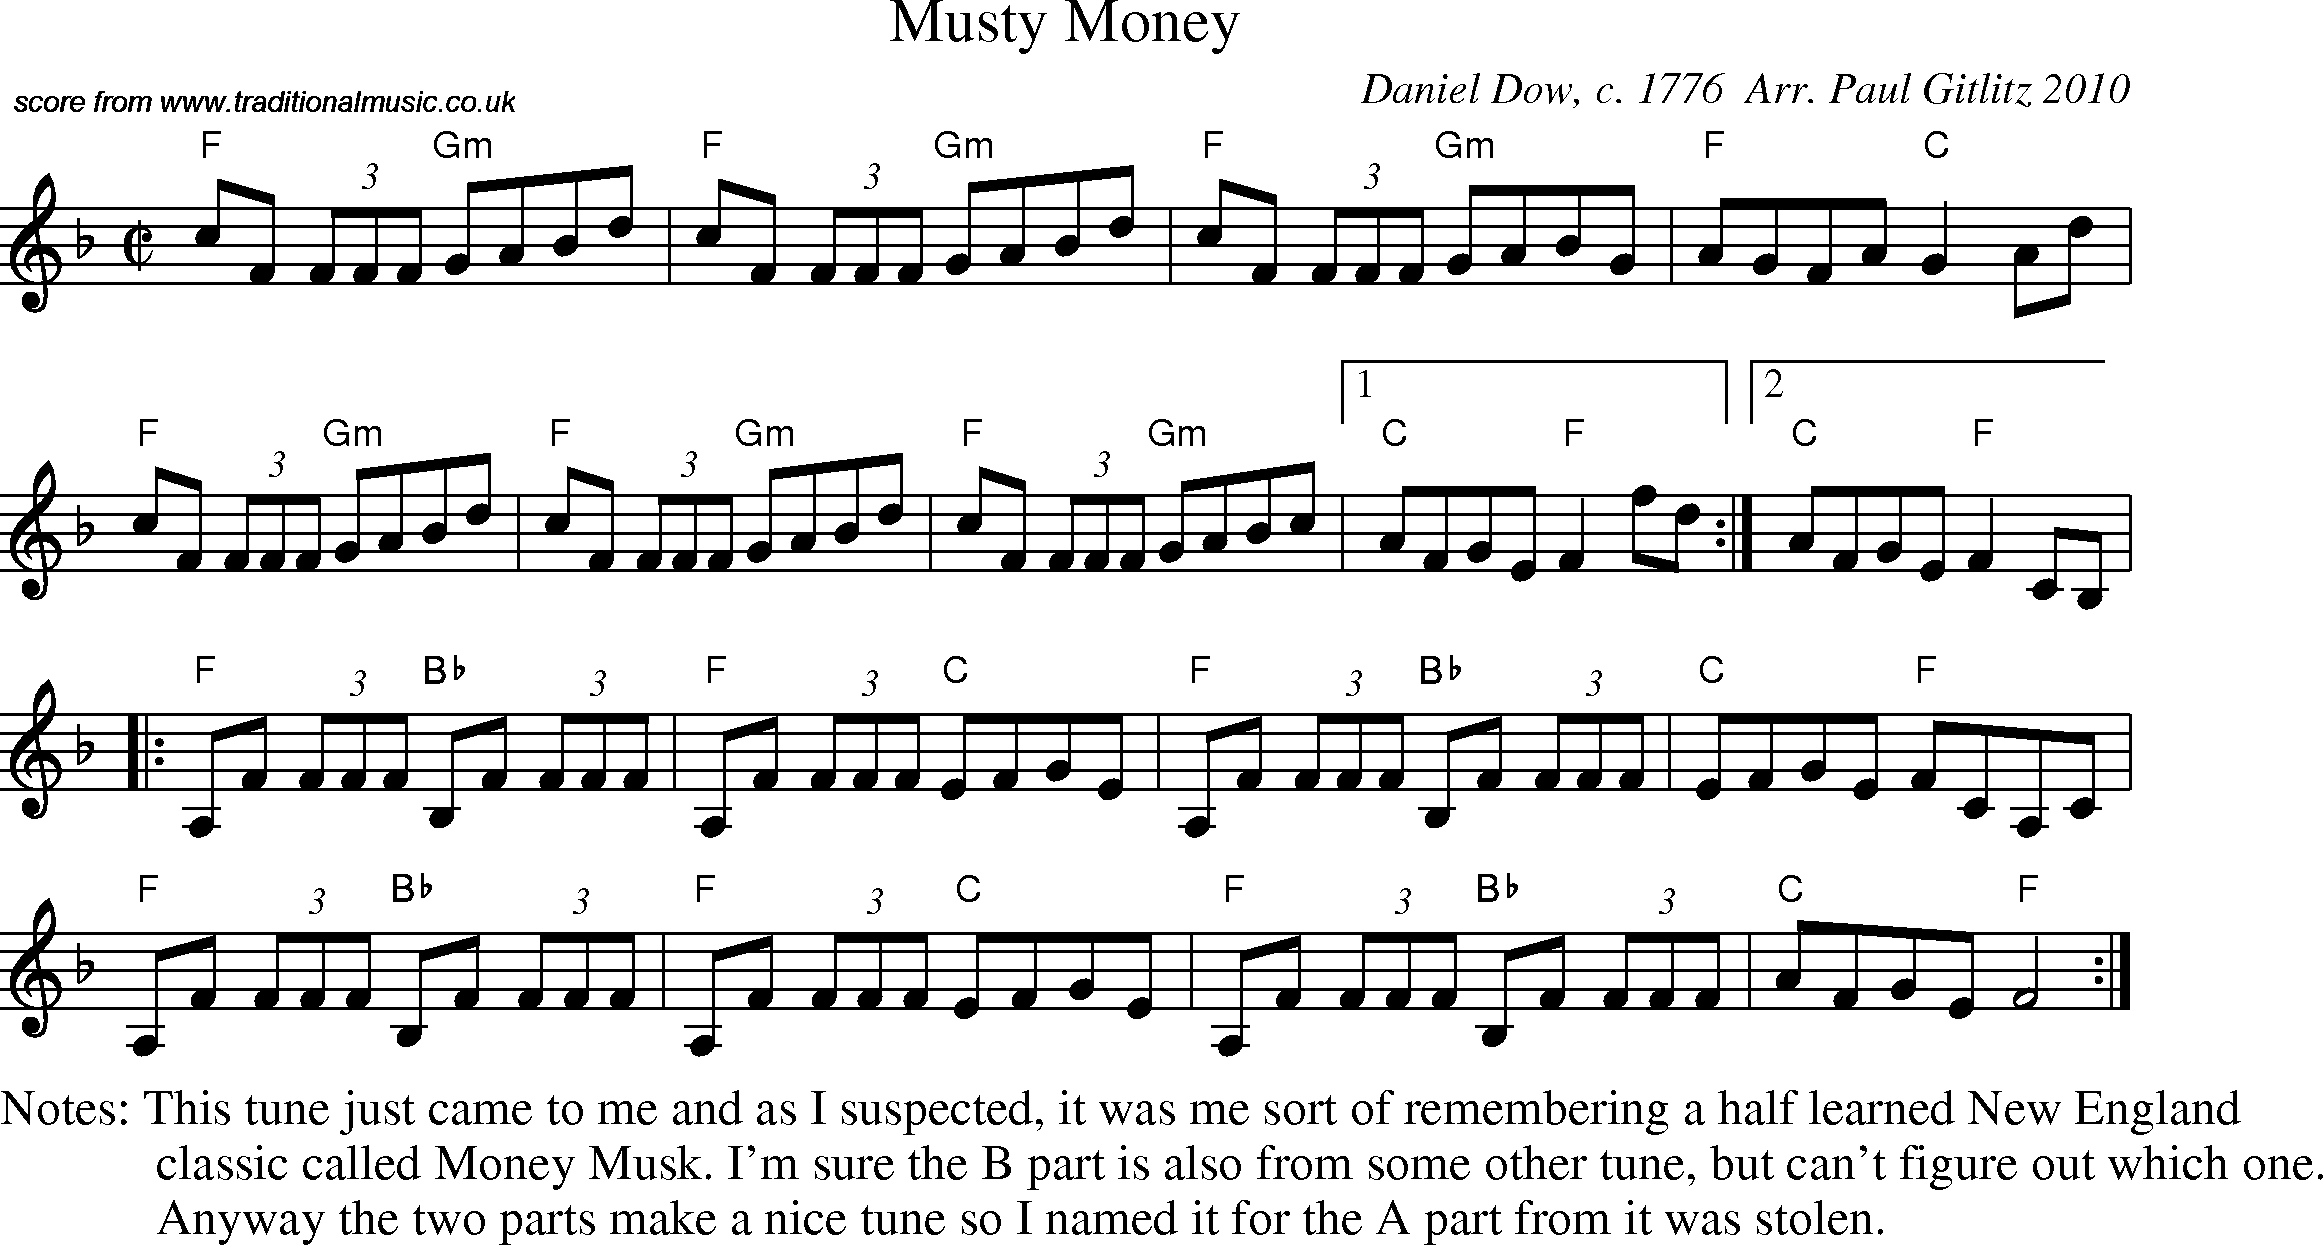 Sheet Music Score for Reel - Musty Money